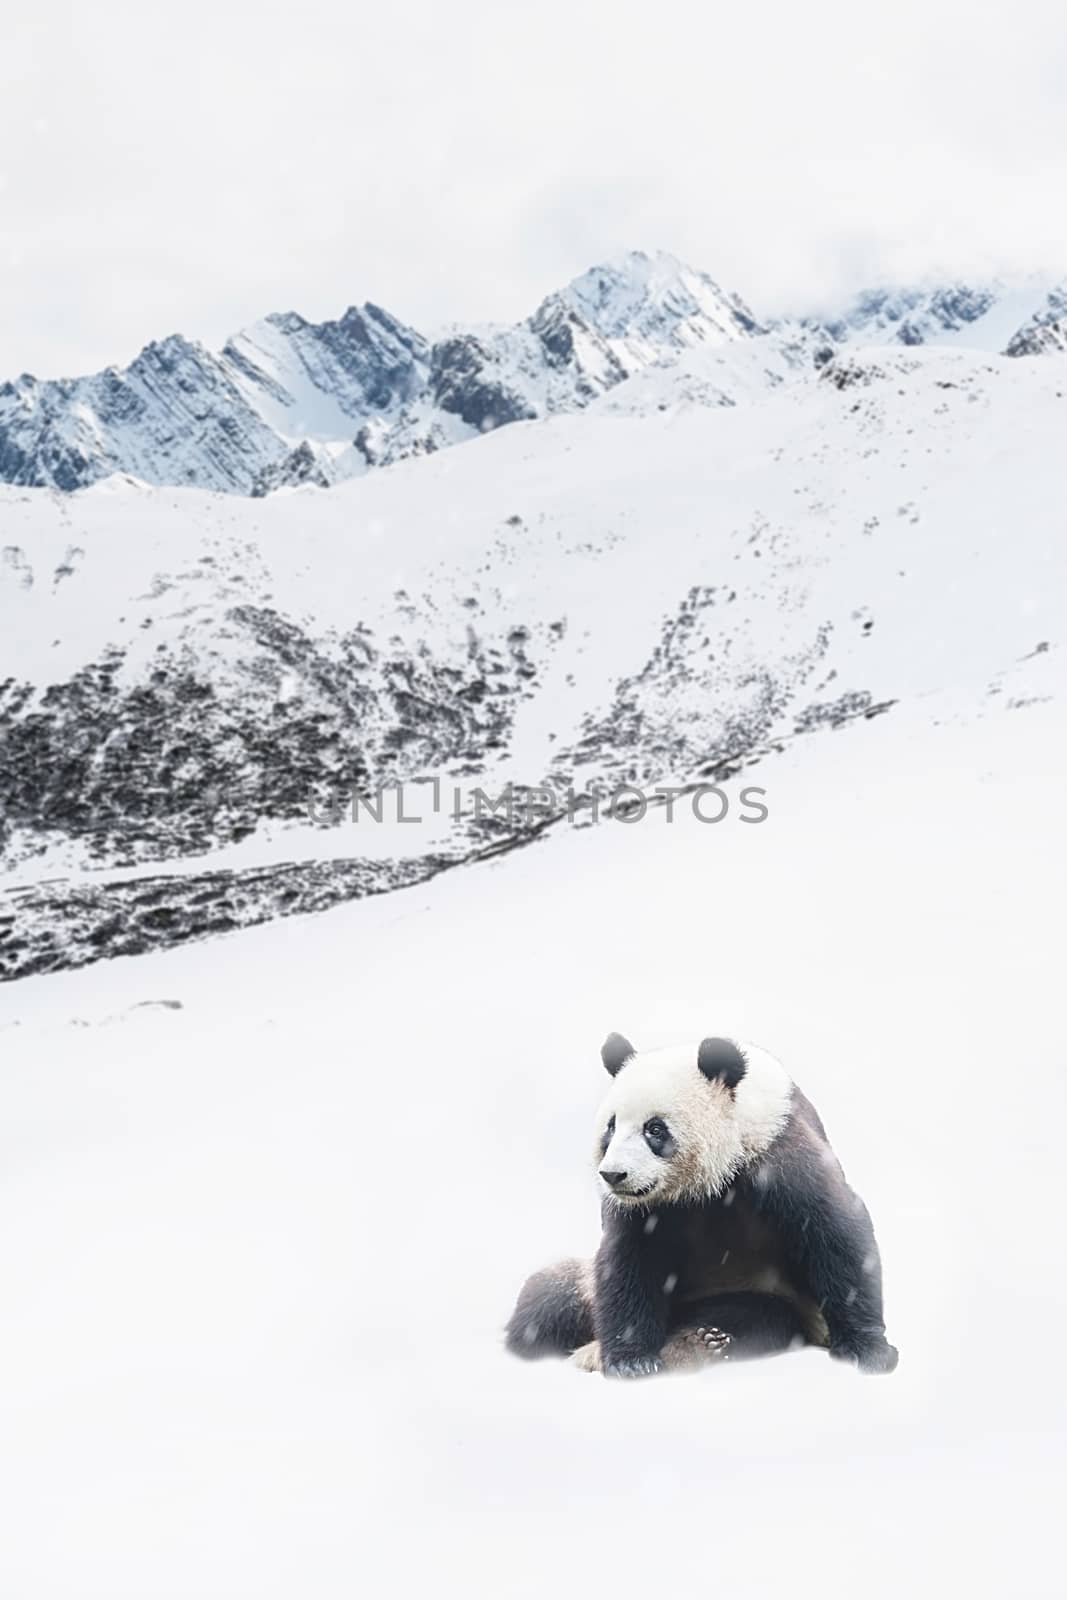 Giant Panda in Snow by Surasak